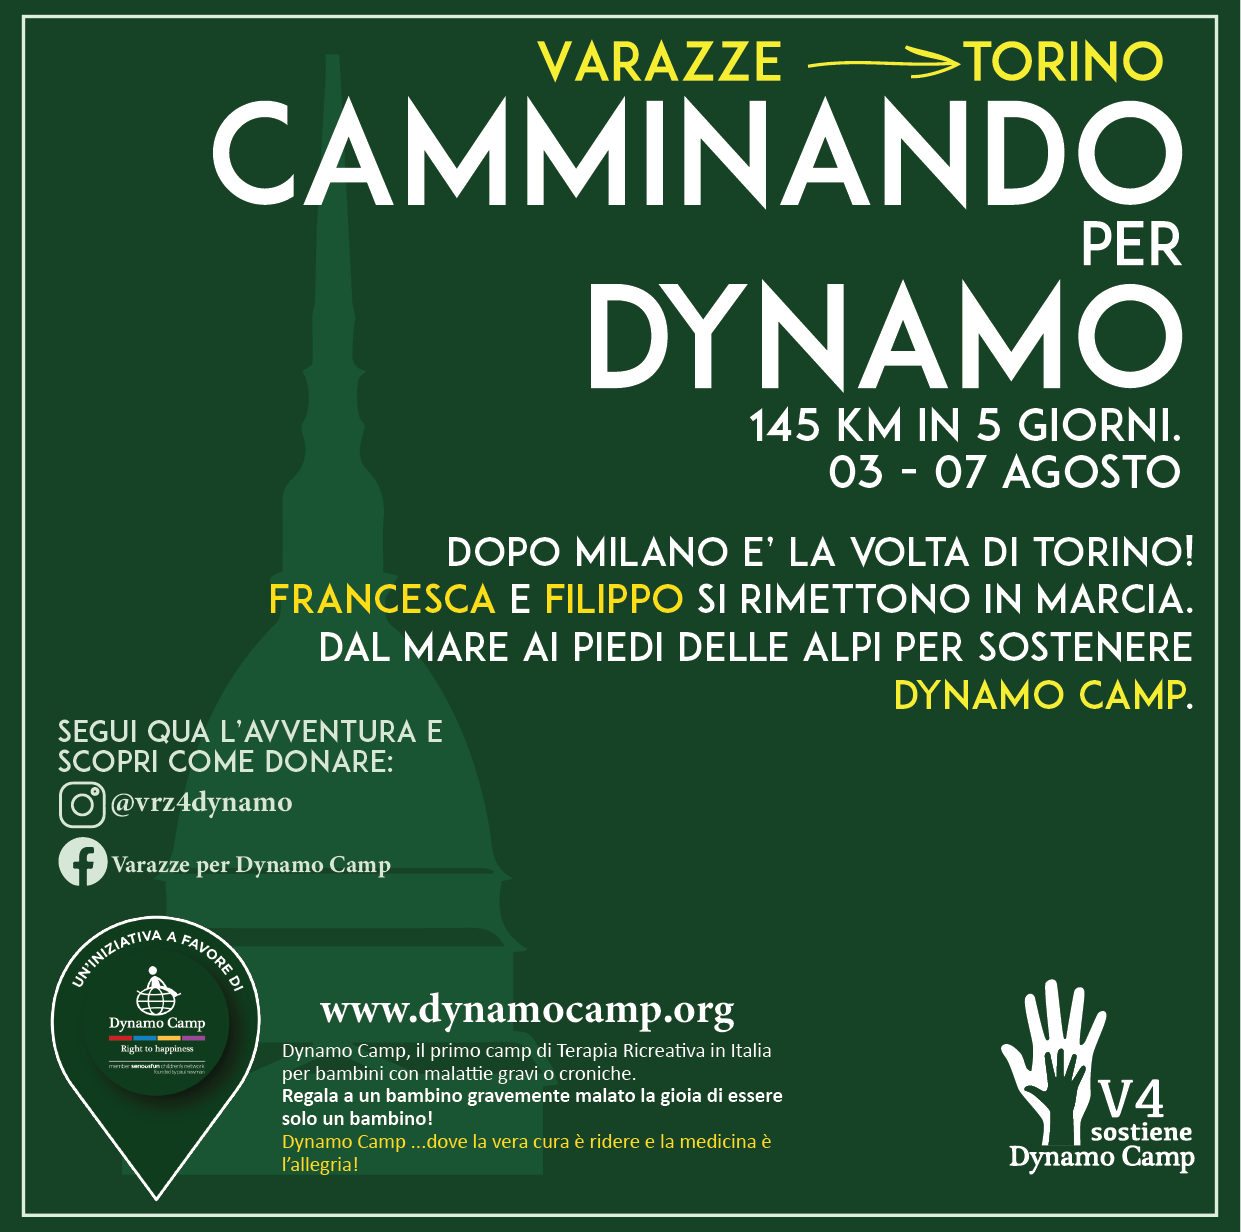 Cover Francesca e Filippo da Varazze - Torino a piedi per Dynamo Camp